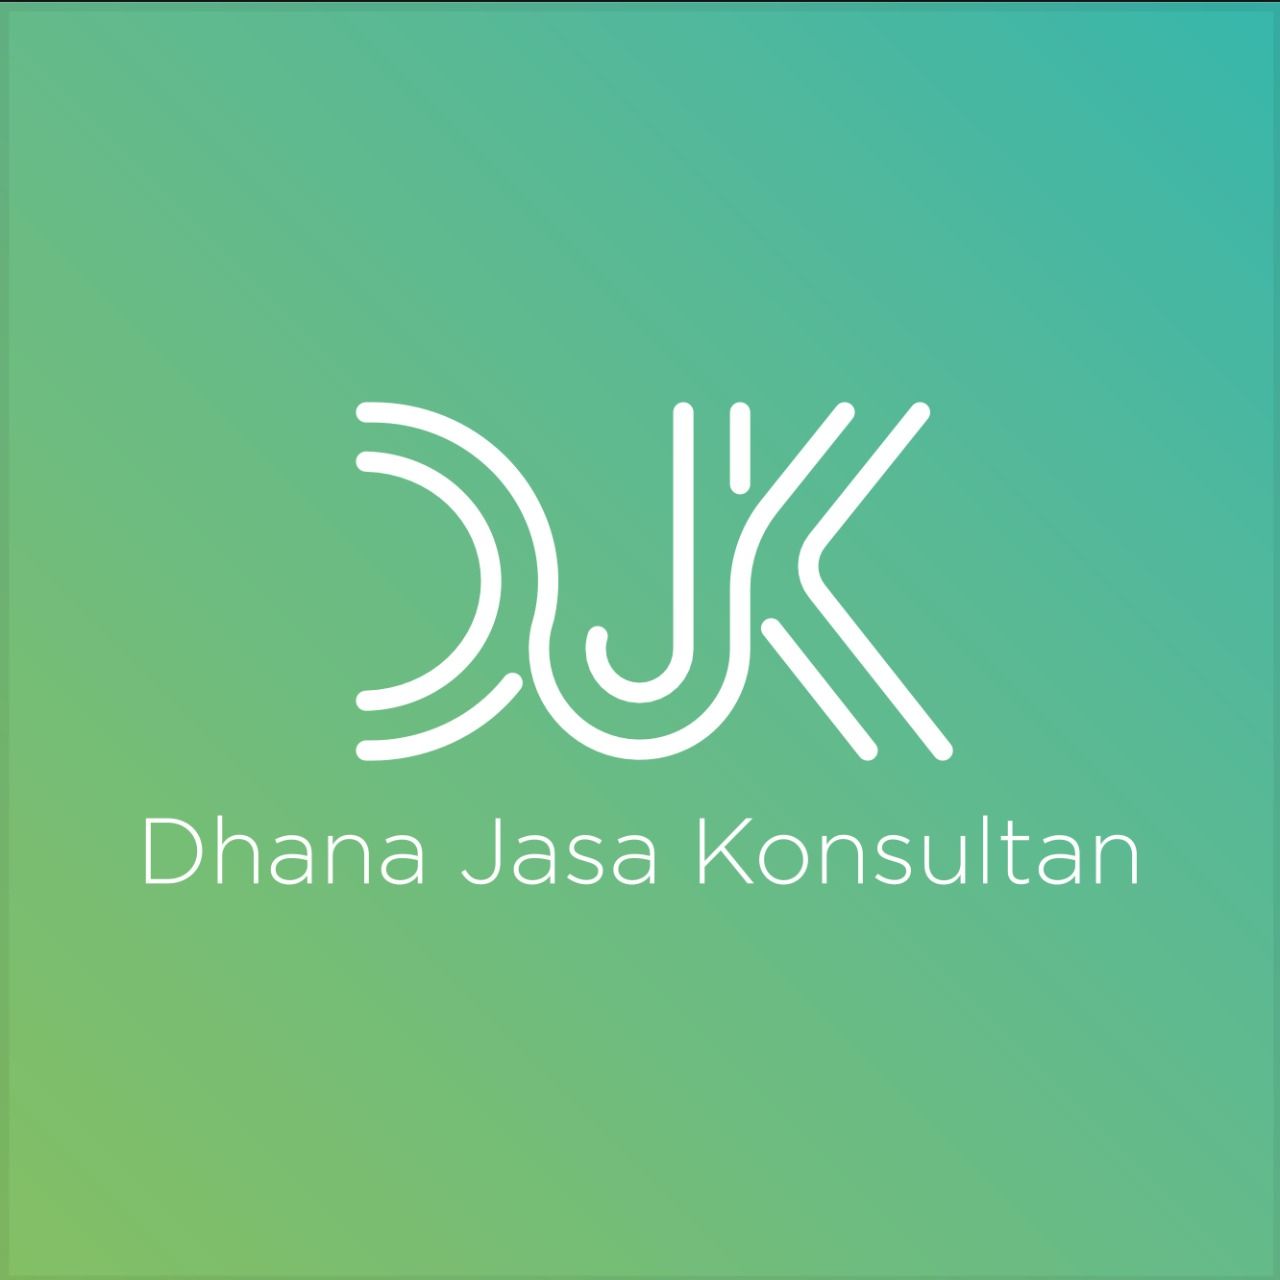 Dhana Jasa Konsultan